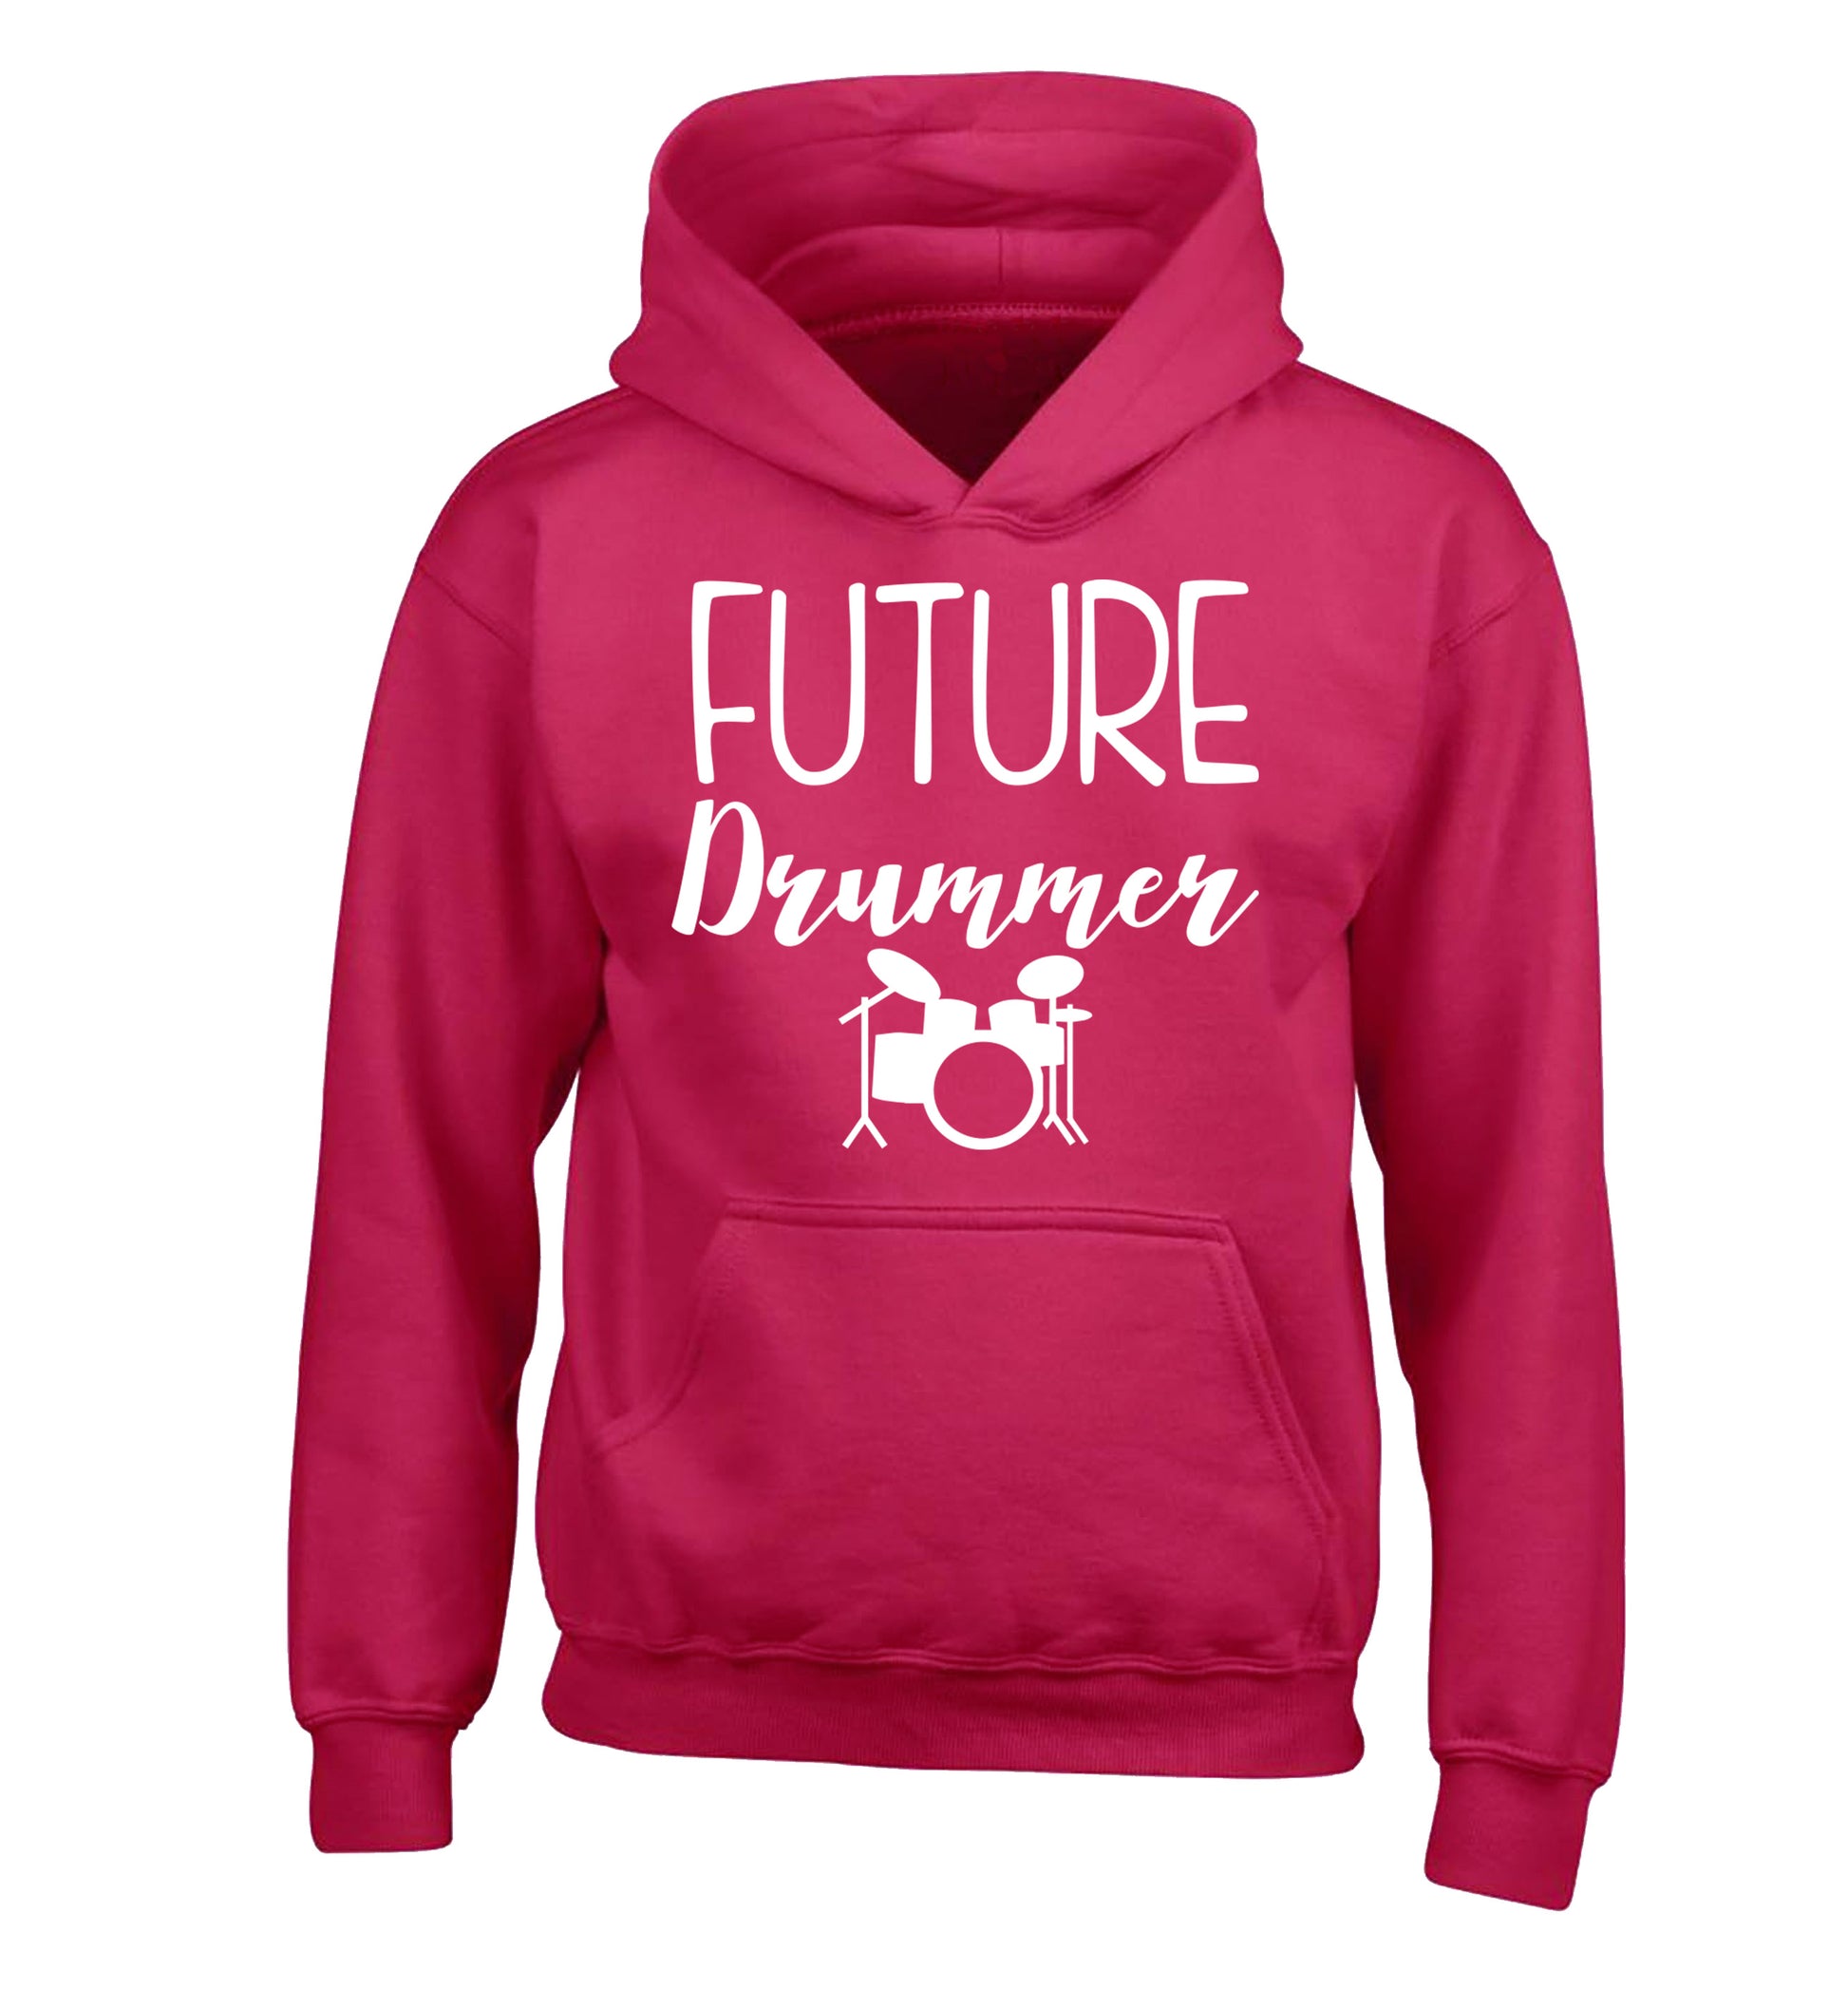 Future drummer children's pink hoodie 12-14 Years